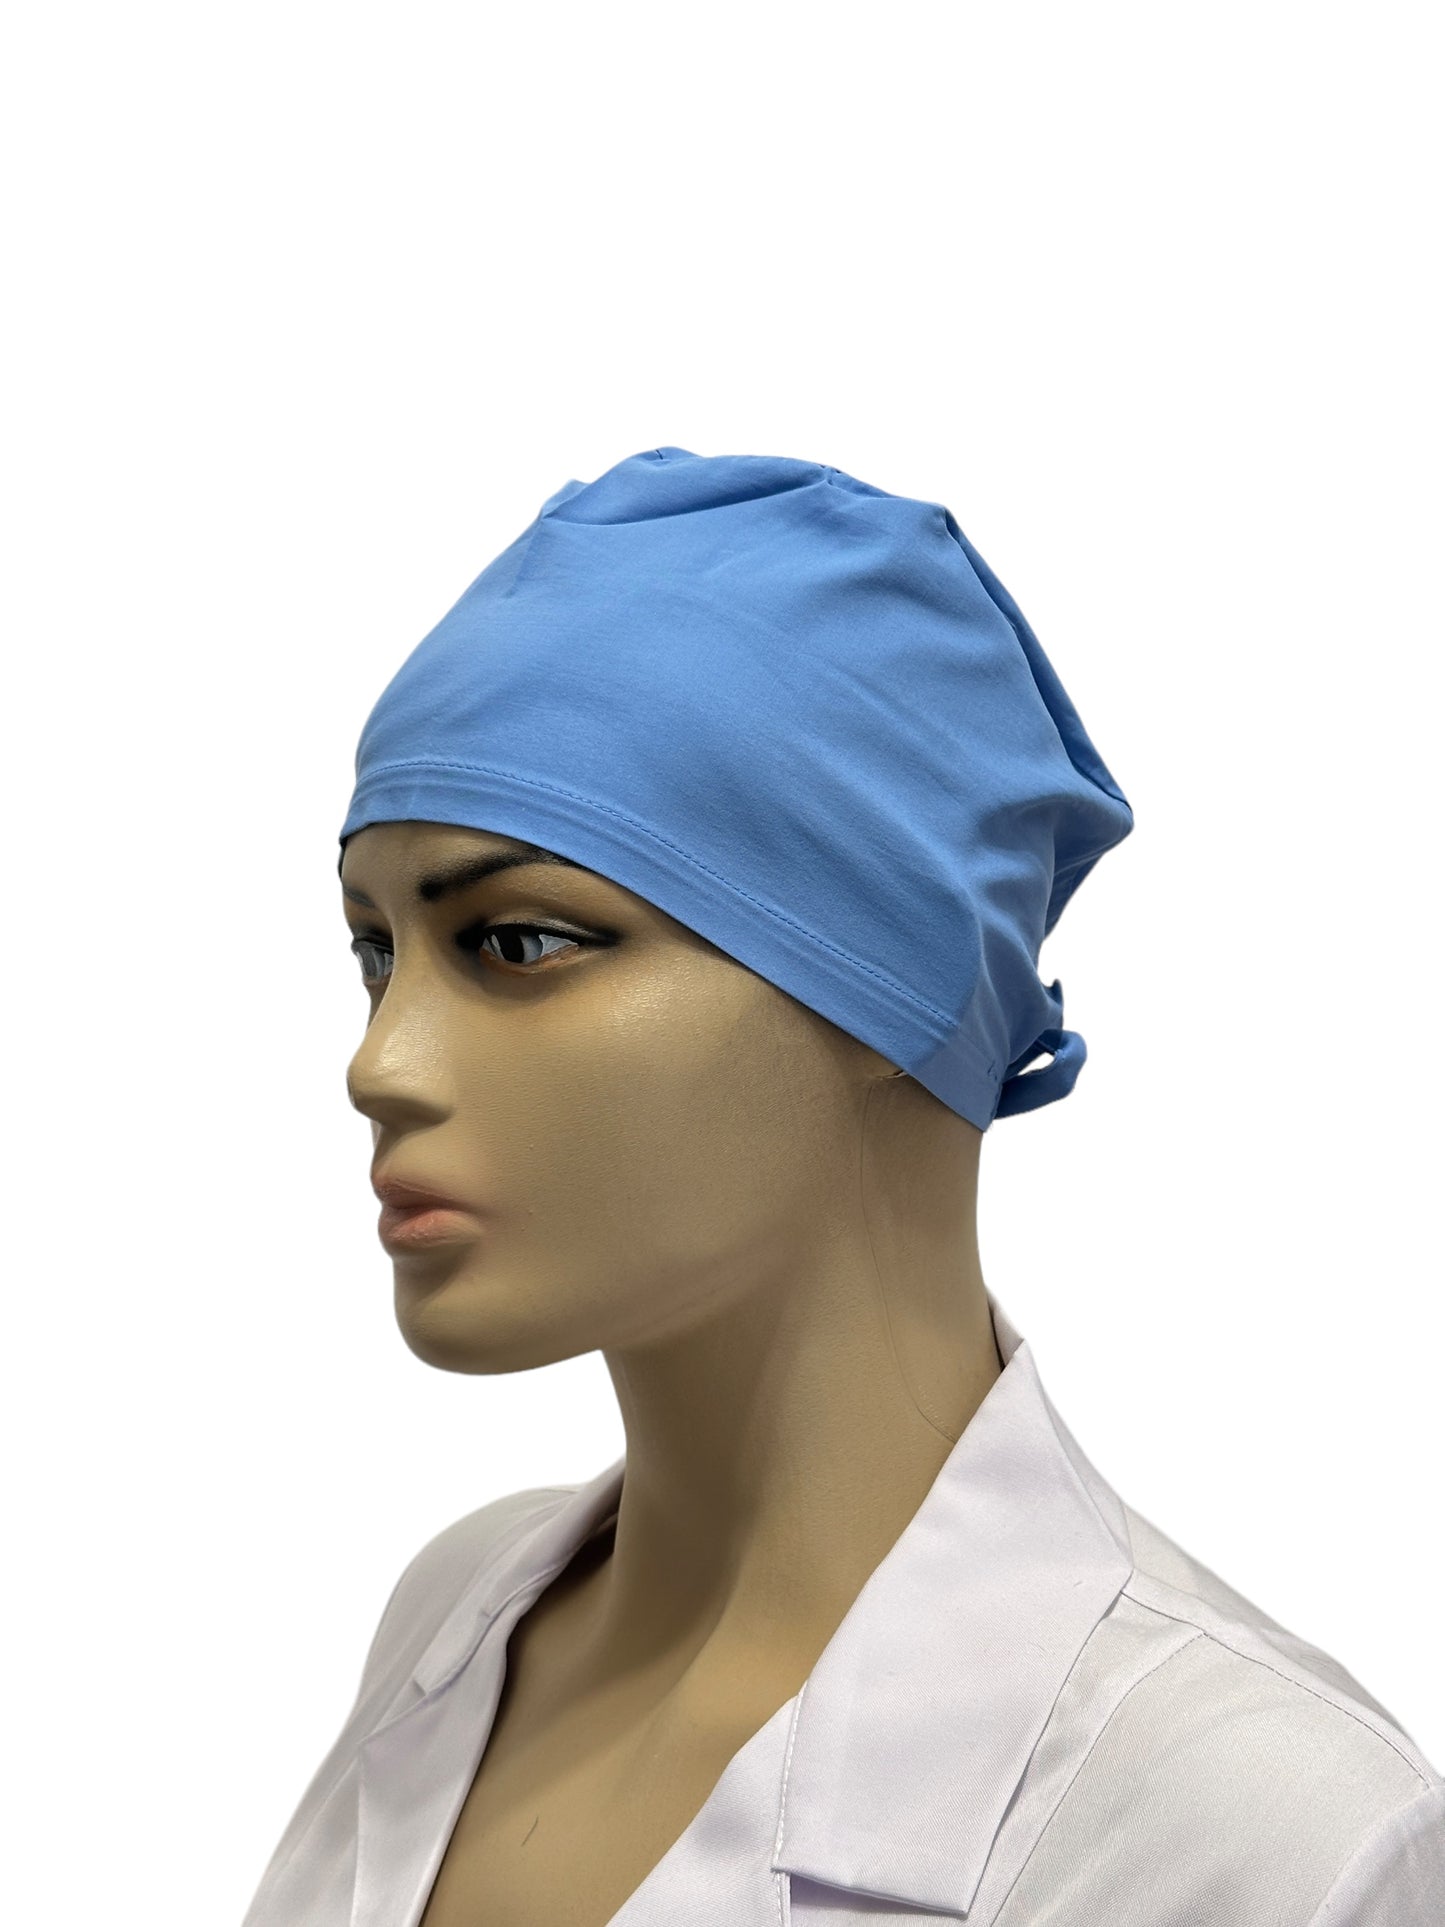 Unisex blue medical cap